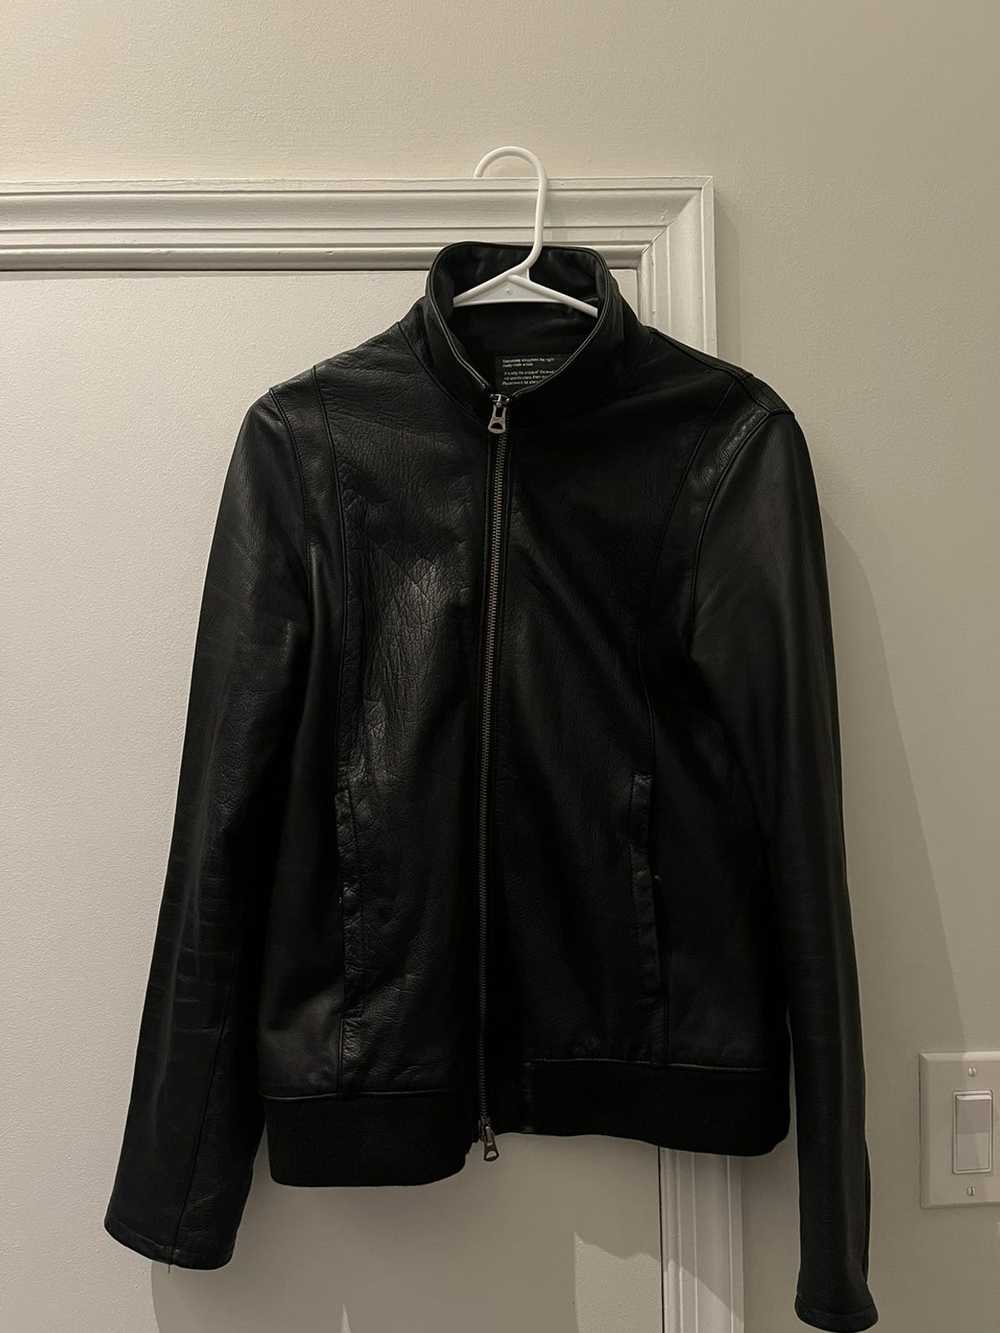 Japanese Brand × Leather Jacket Japanese Leather … - image 1